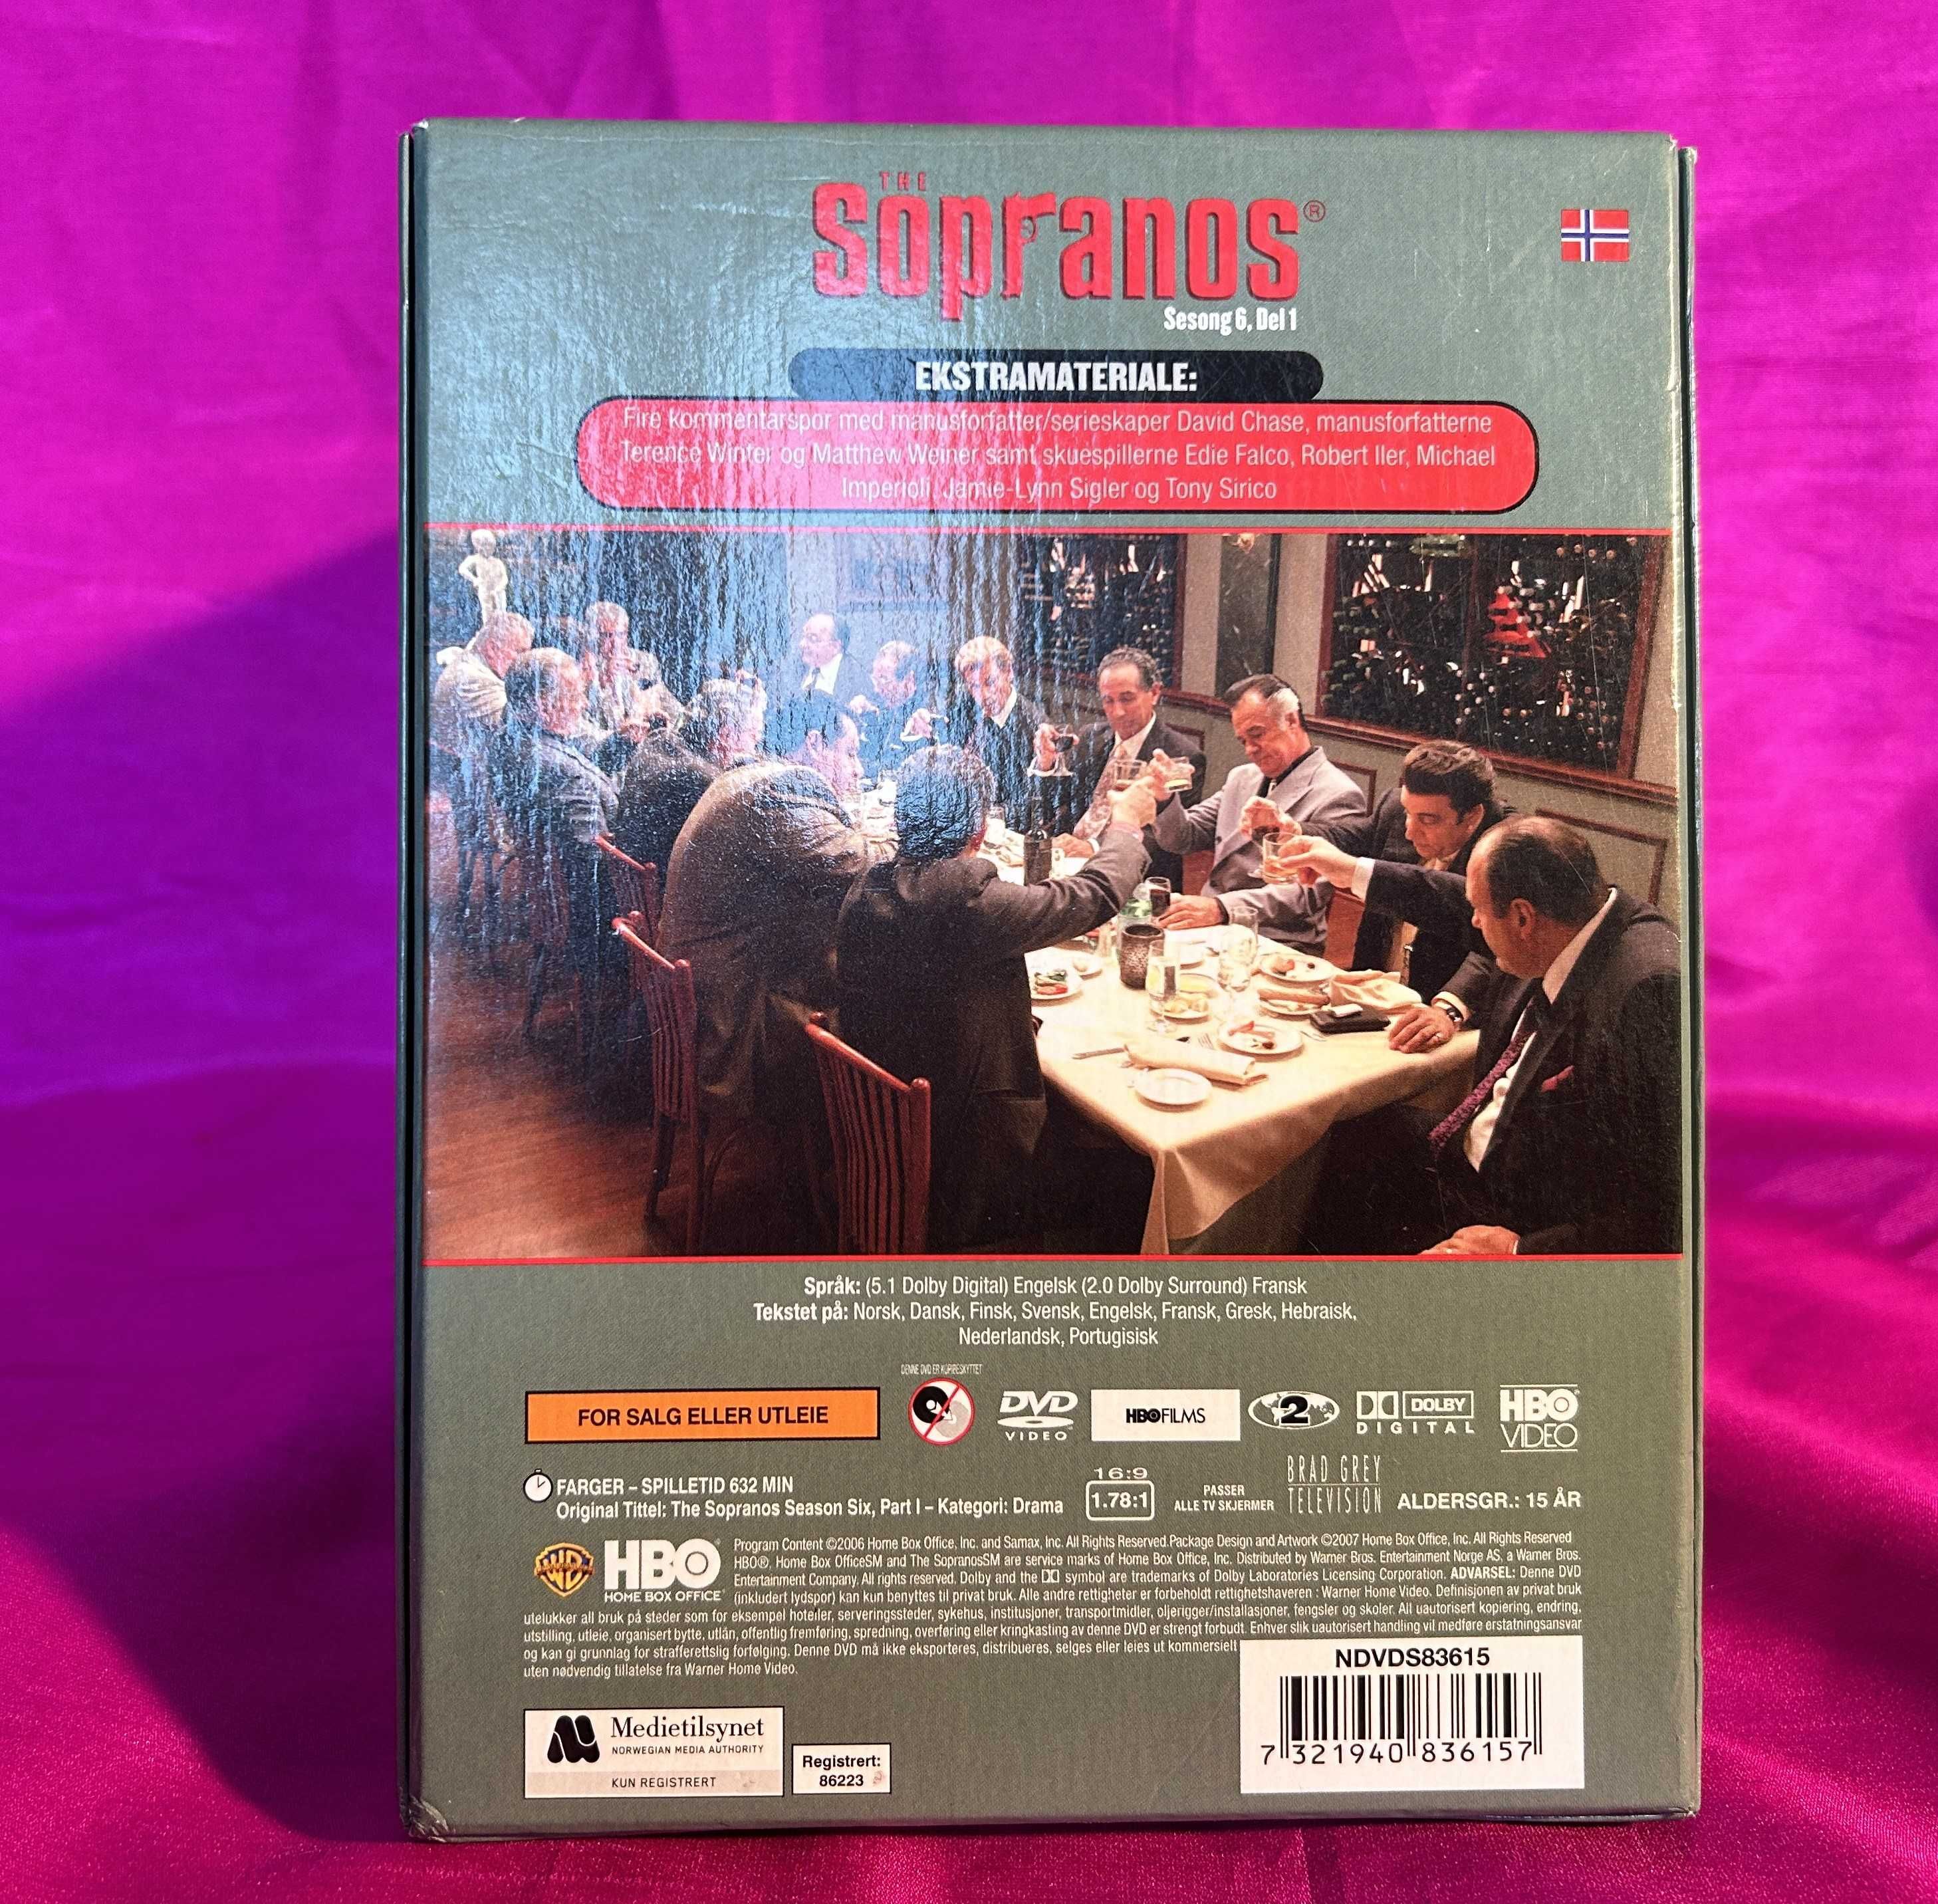 Rodzina Soprano, The Sopranos DVD, etui, album, wkładka , cztery płyty